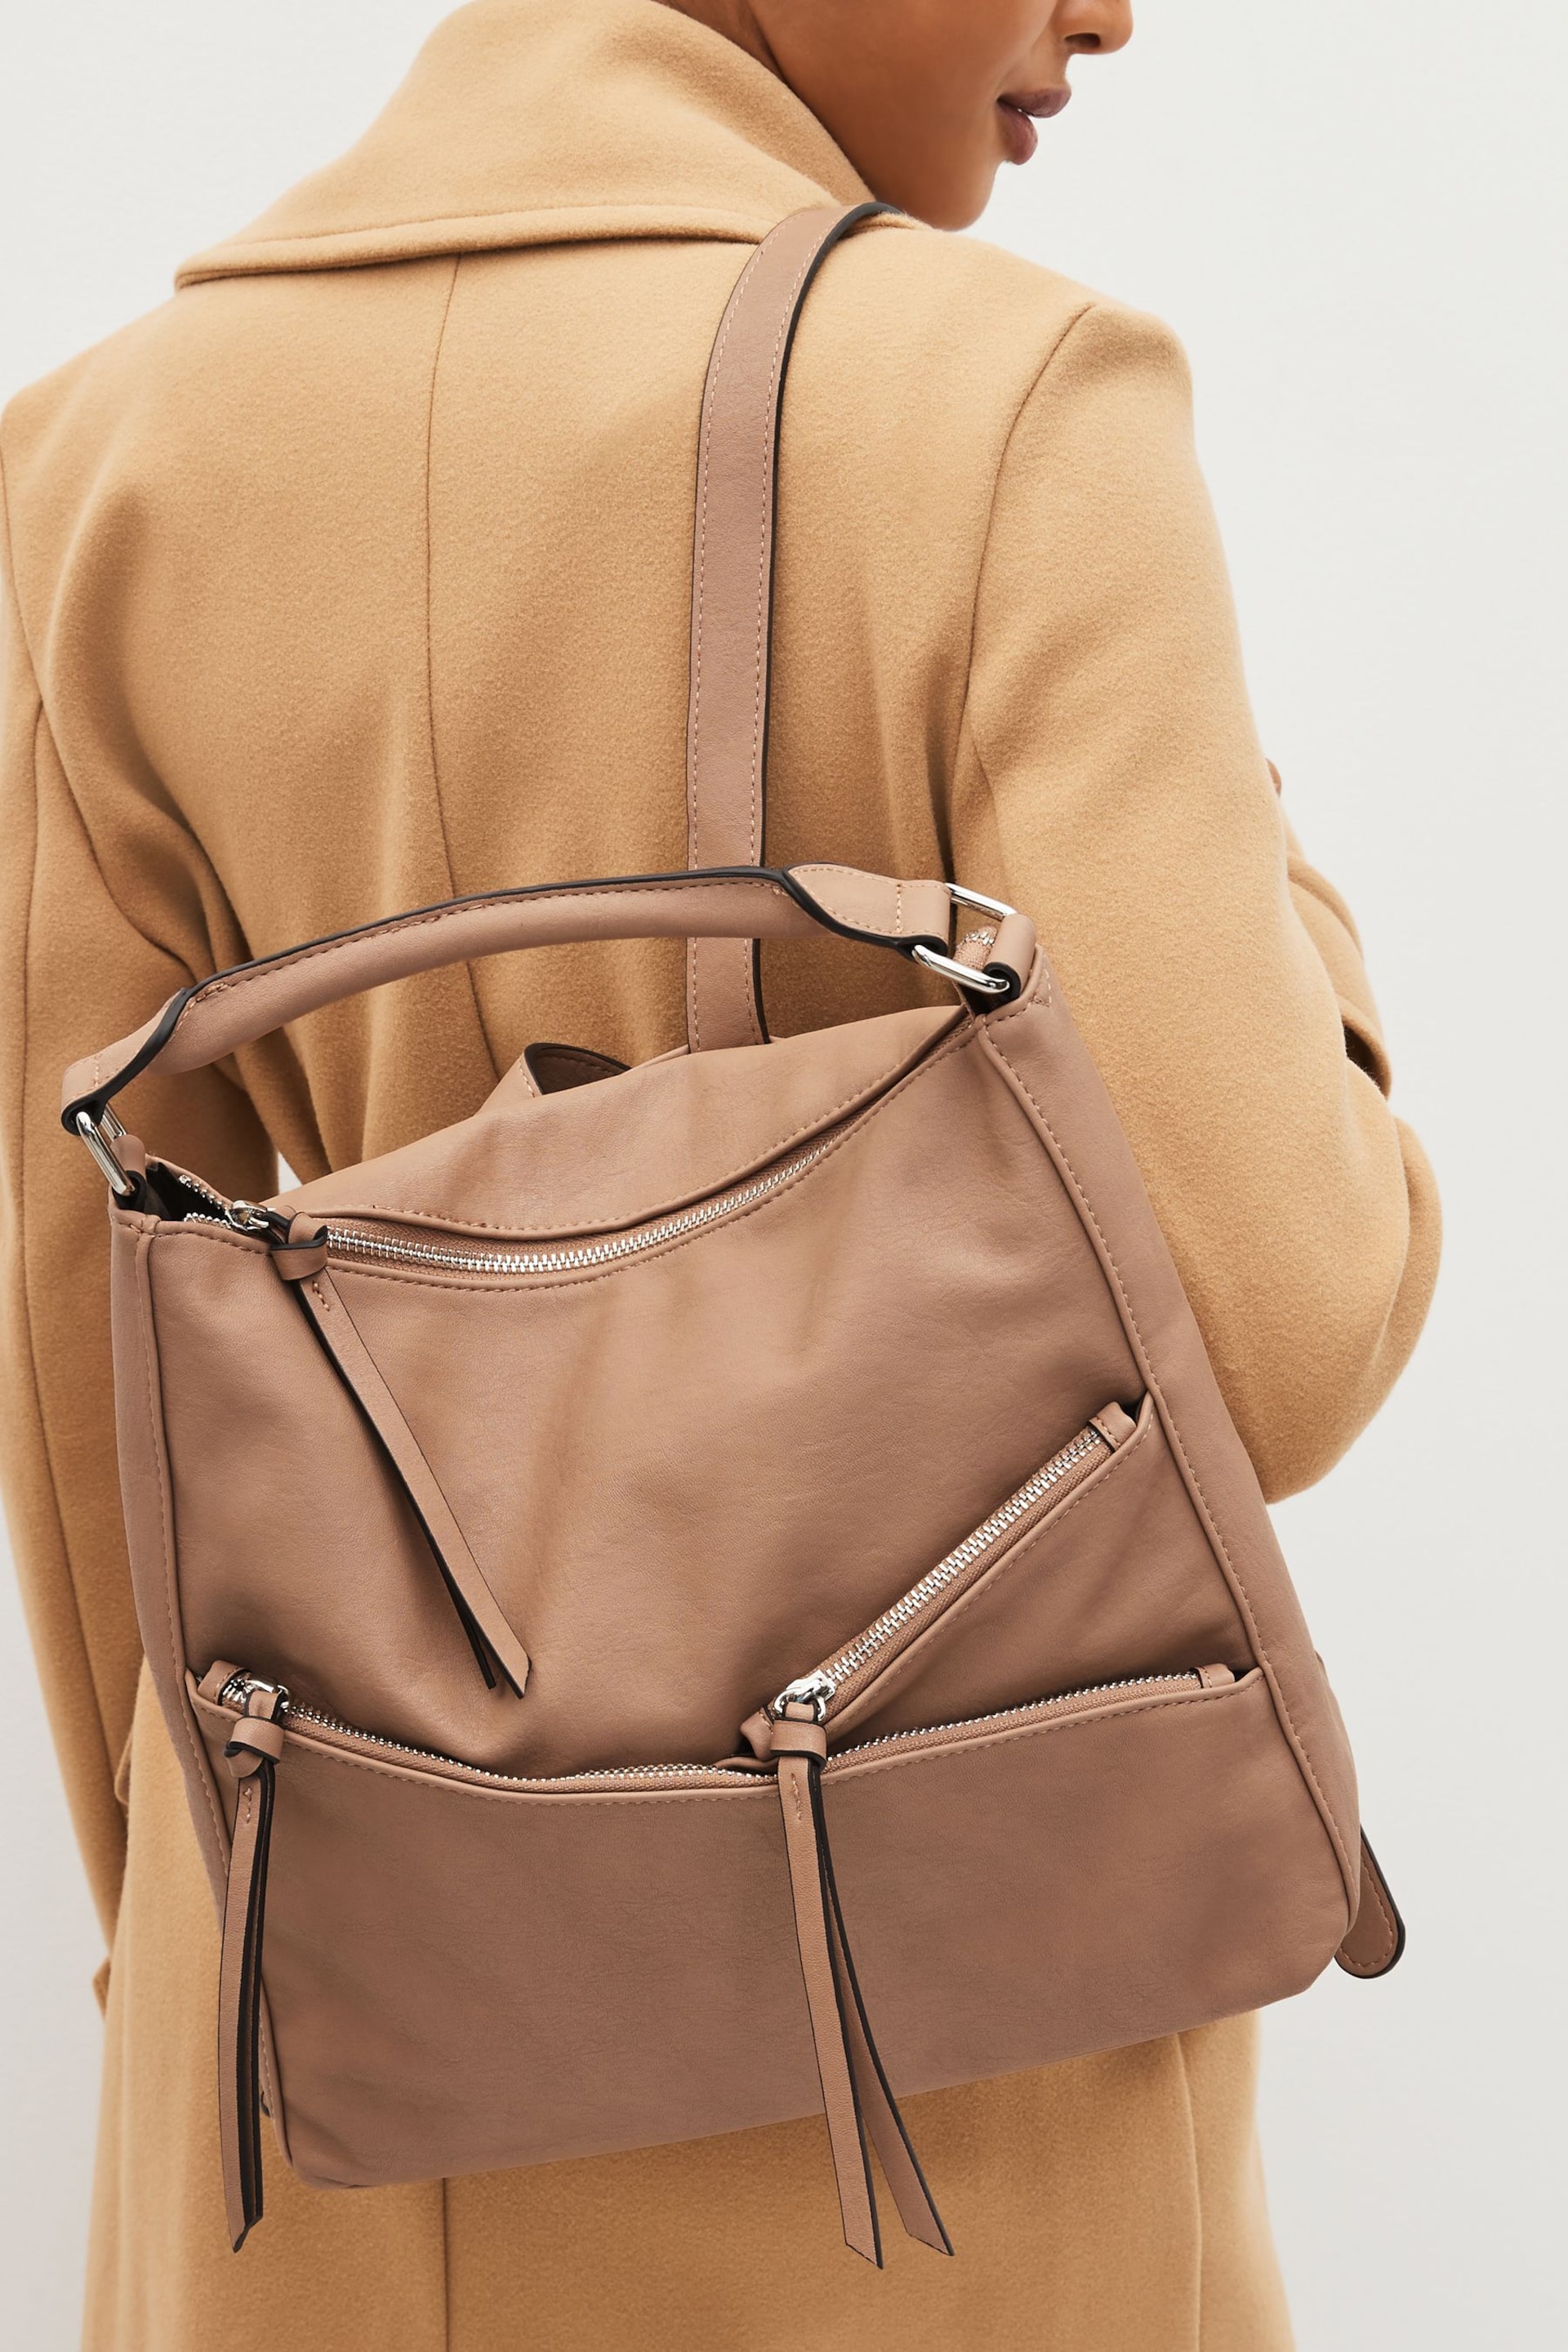 Tan Brown Side Zip Backpack - Image 5 of 7